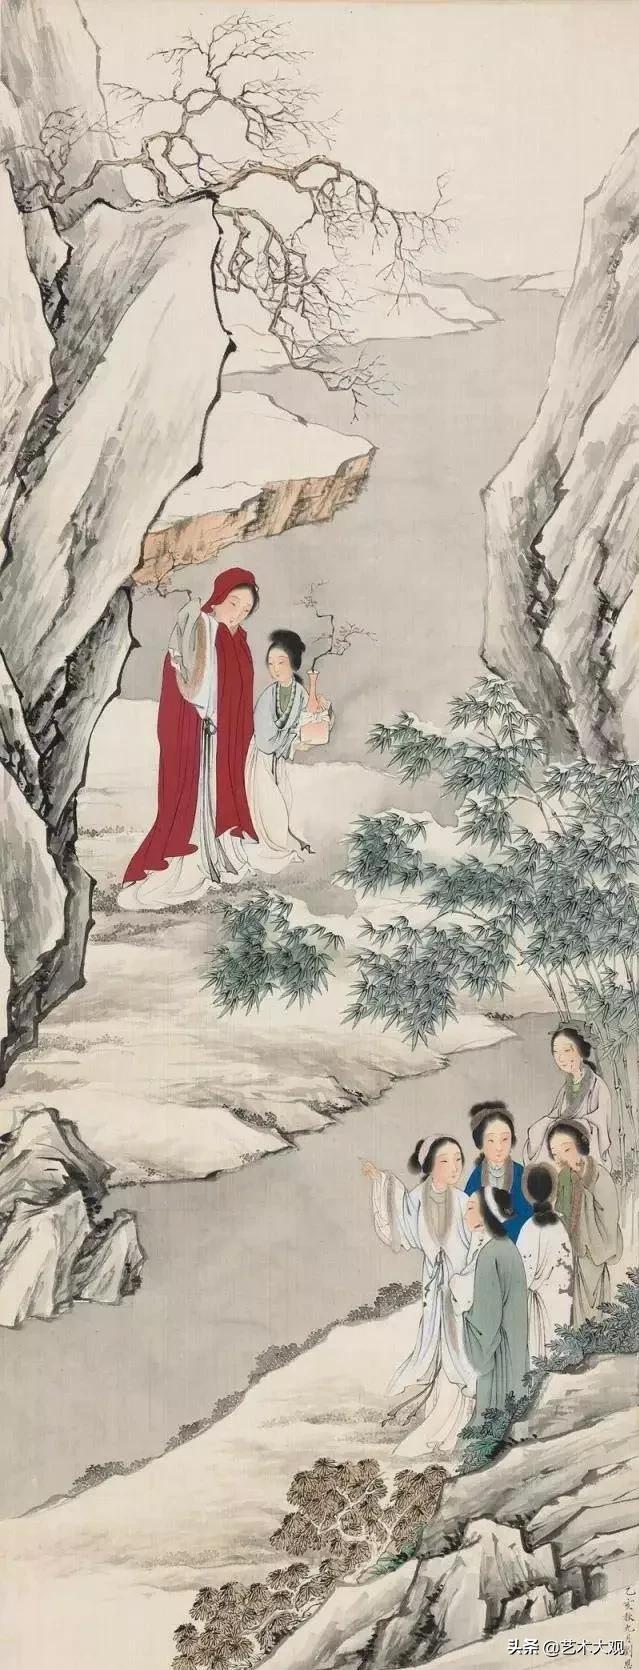 婉约仕女画 | 工笔重彩大师刘凌沧古典诗意人物画欣赏